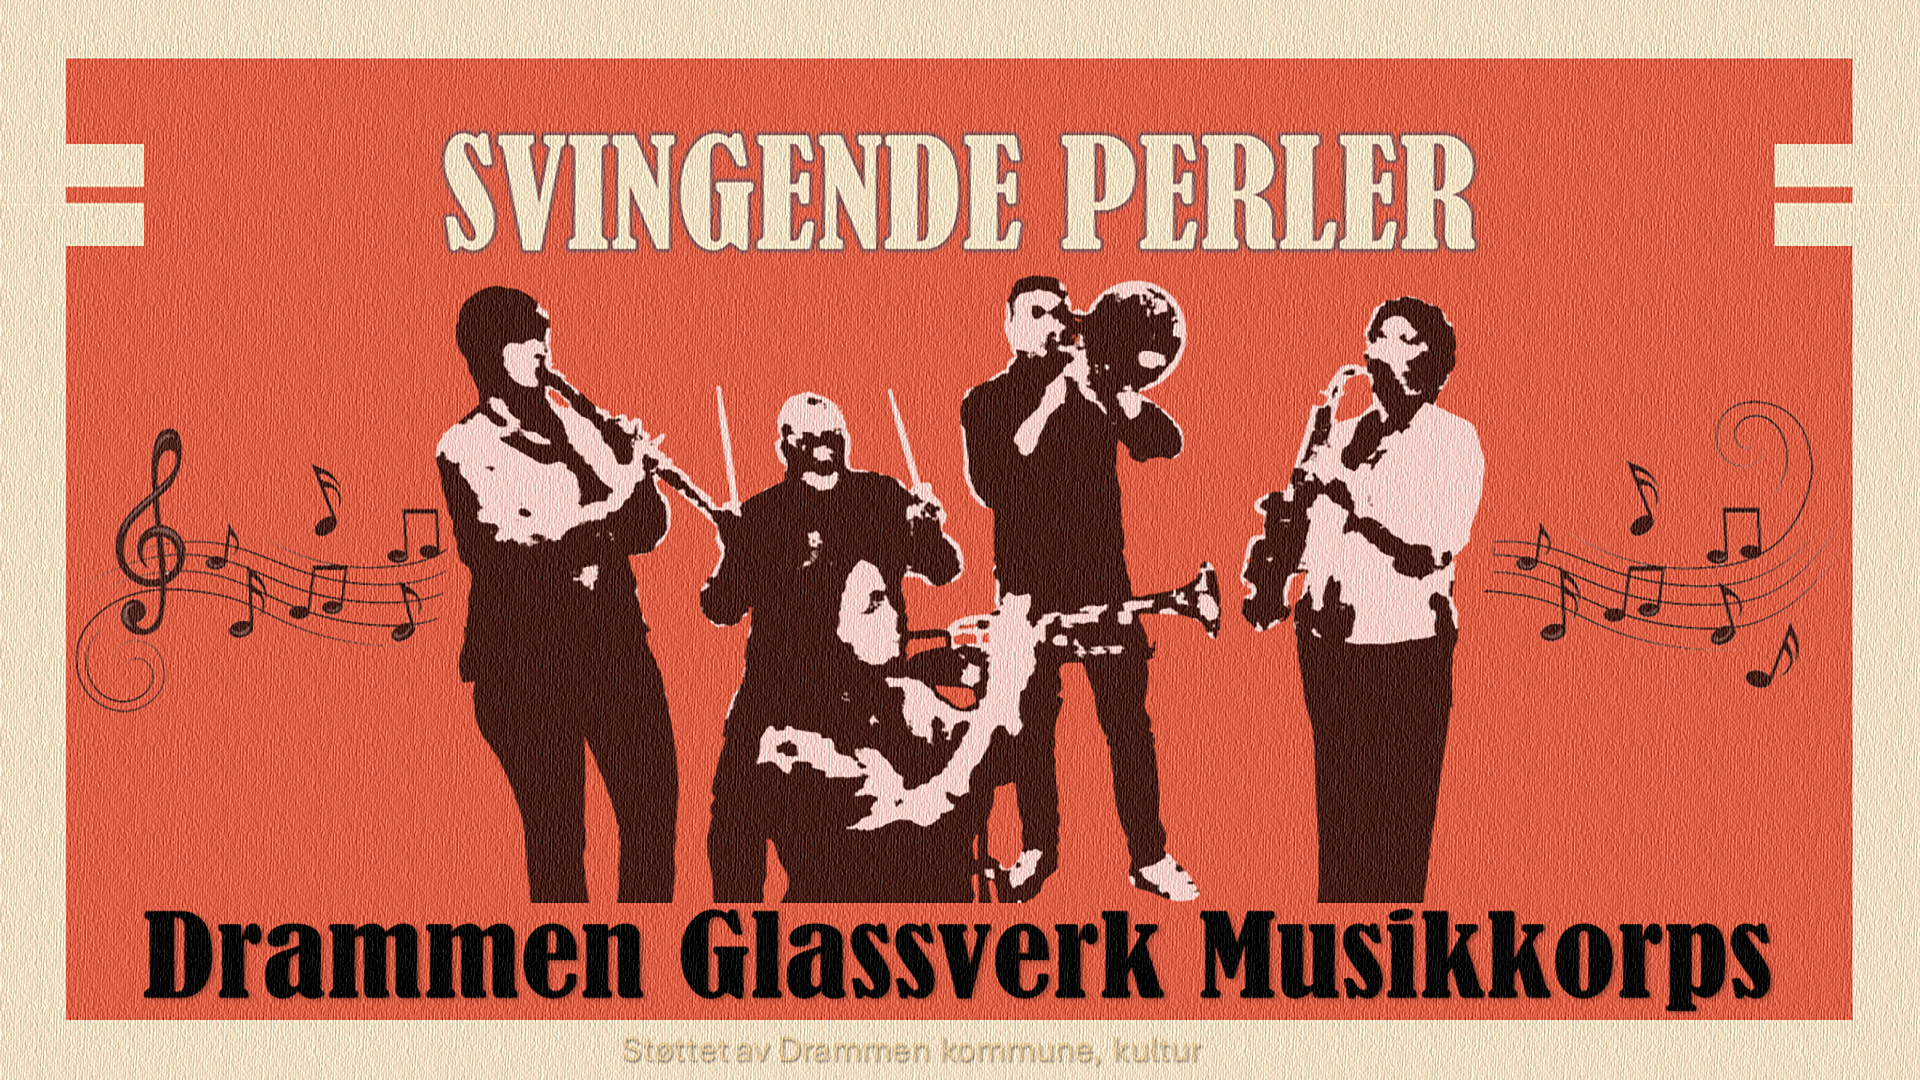 Drammen Glassverk Musikkorps